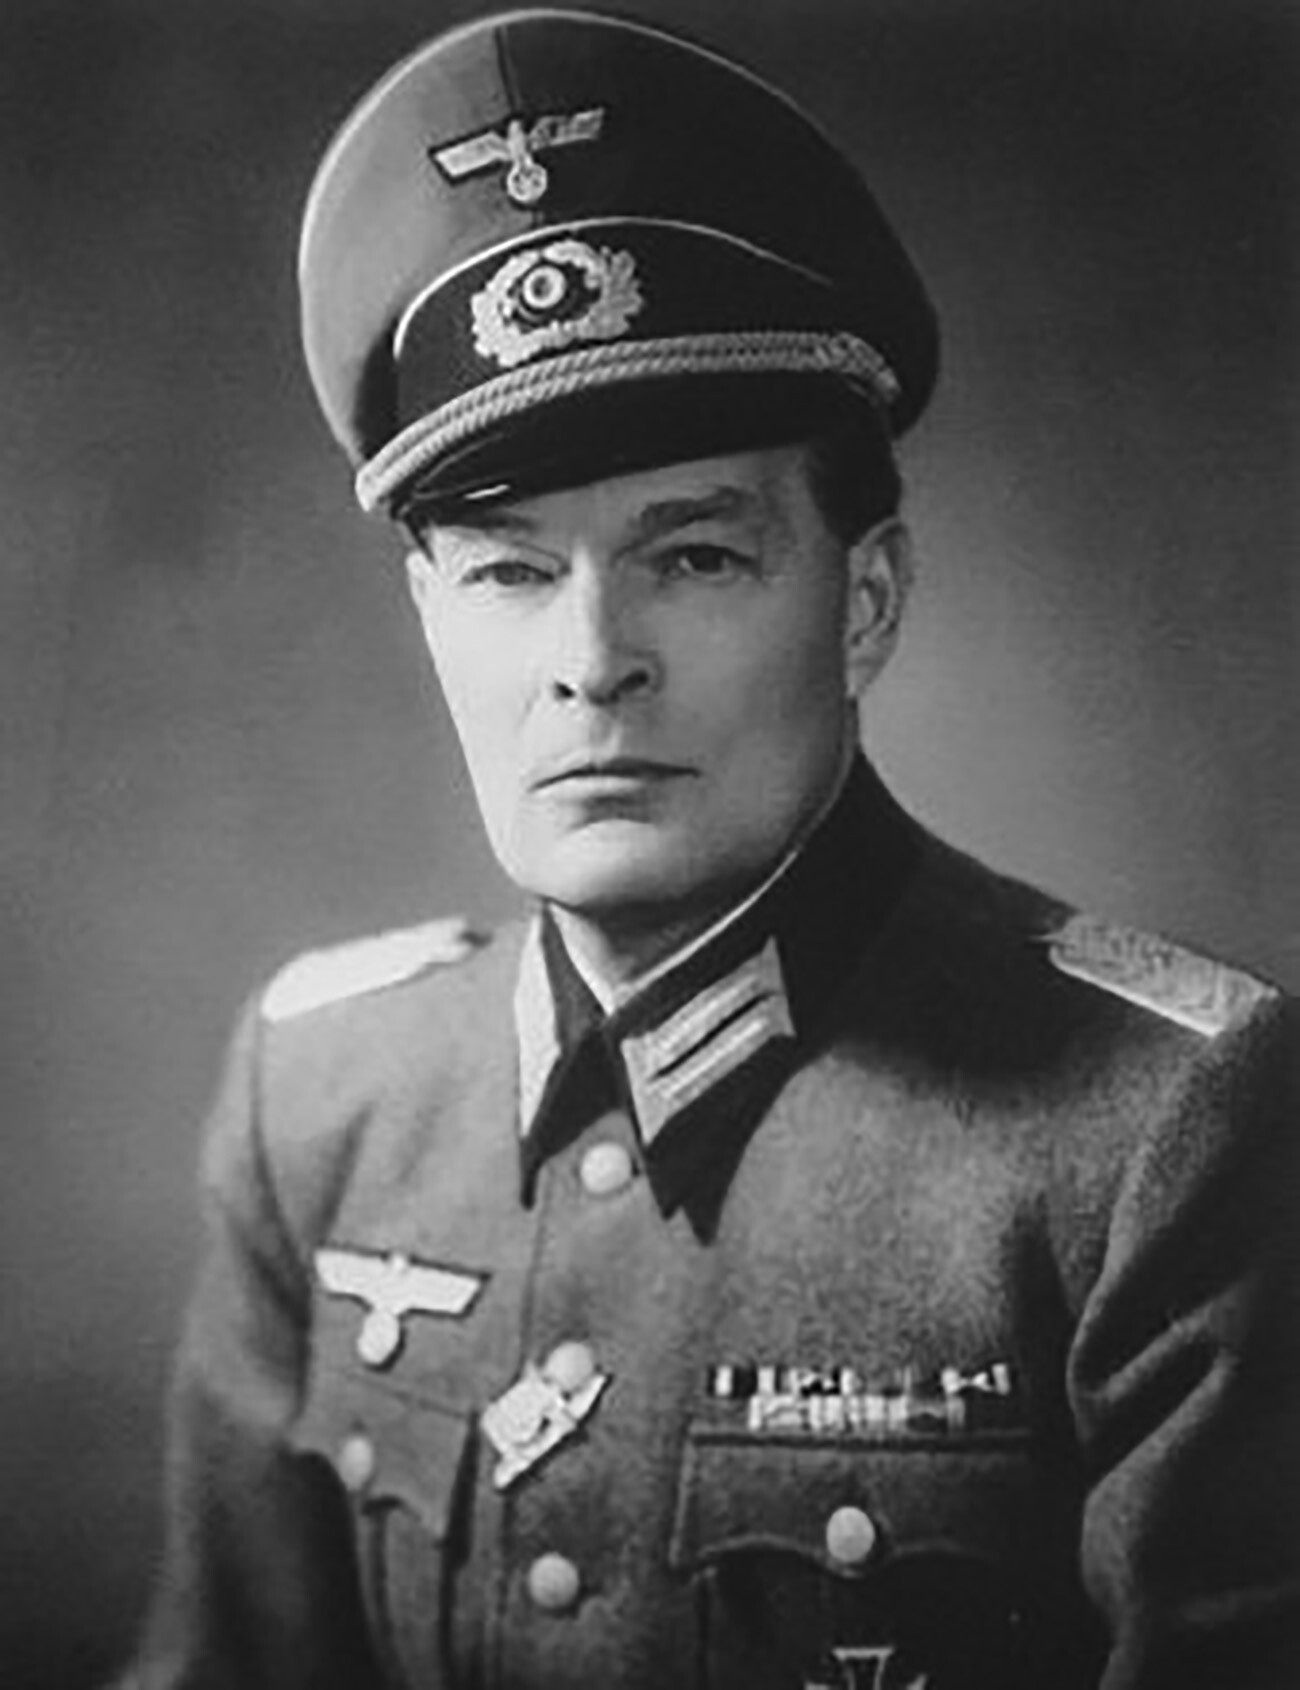 Georg-Michael von Mehrenberg in der Uniform eines Wehrmachtsmajors, ca. 1944